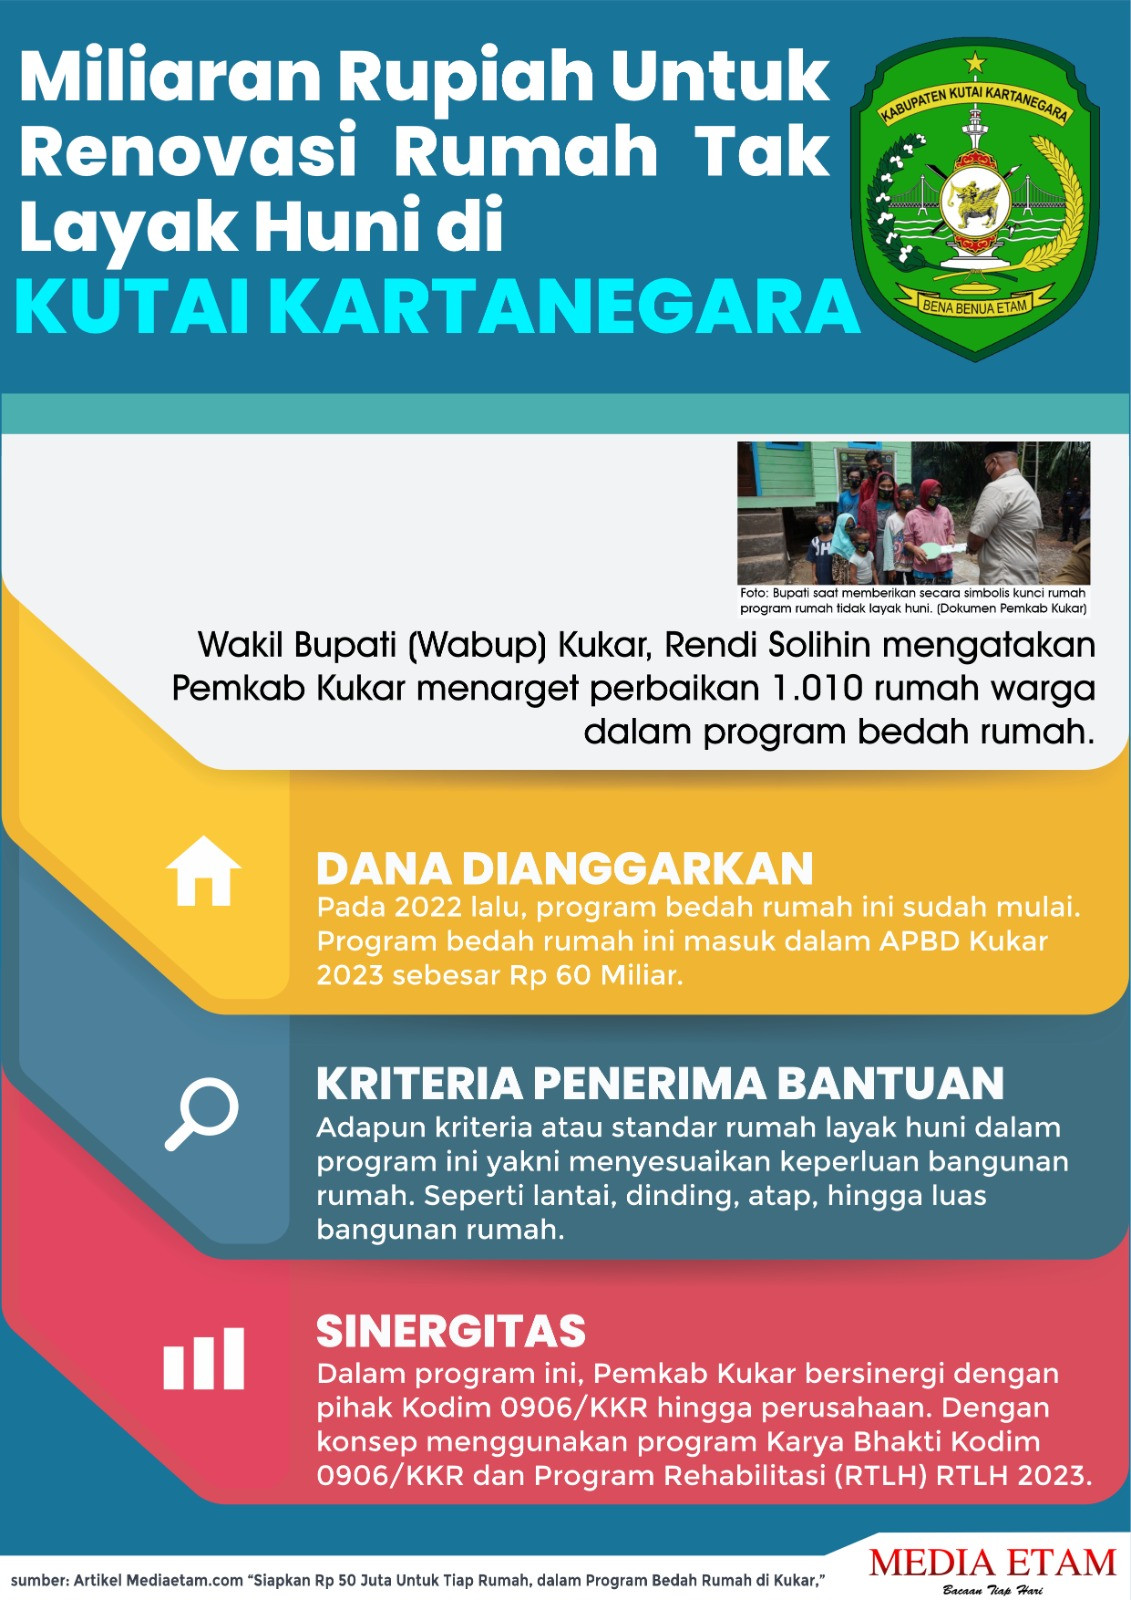 Siapkan Rp 50 Juta Untuk Tiap Rumah, dalam Program Bedah Rumah di Kukar